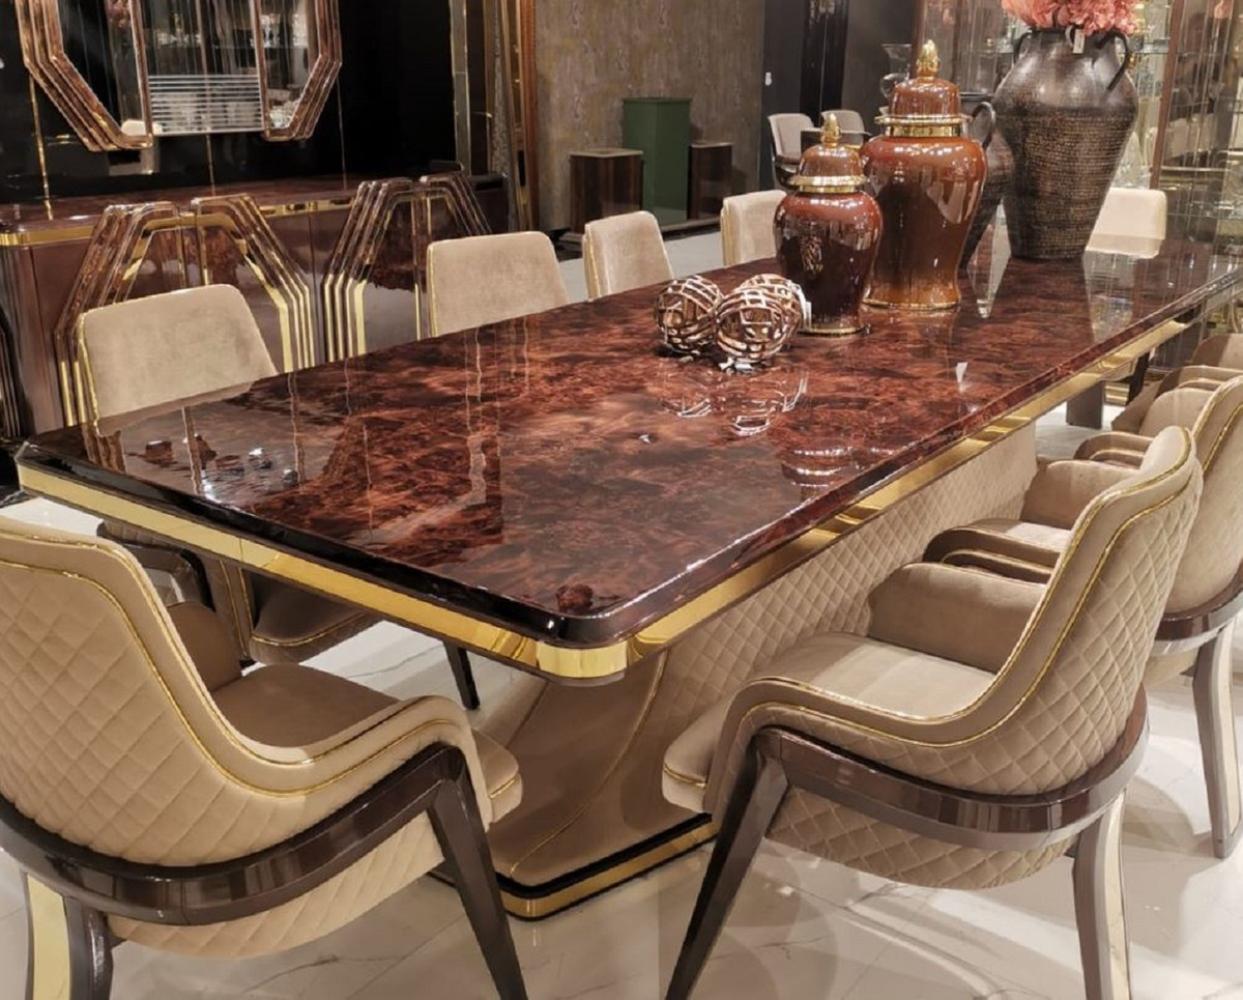 Casa Padrino Luxus Art Deco Esstisch Braun / Beige / Gold 226 x 112 x H. 70 cm - Massivholz Küchentisch mit Tischplatte in Marmoroptik - Esszimmer Möbel - Art Deco Möbel - Luxus Möbel Bild 1